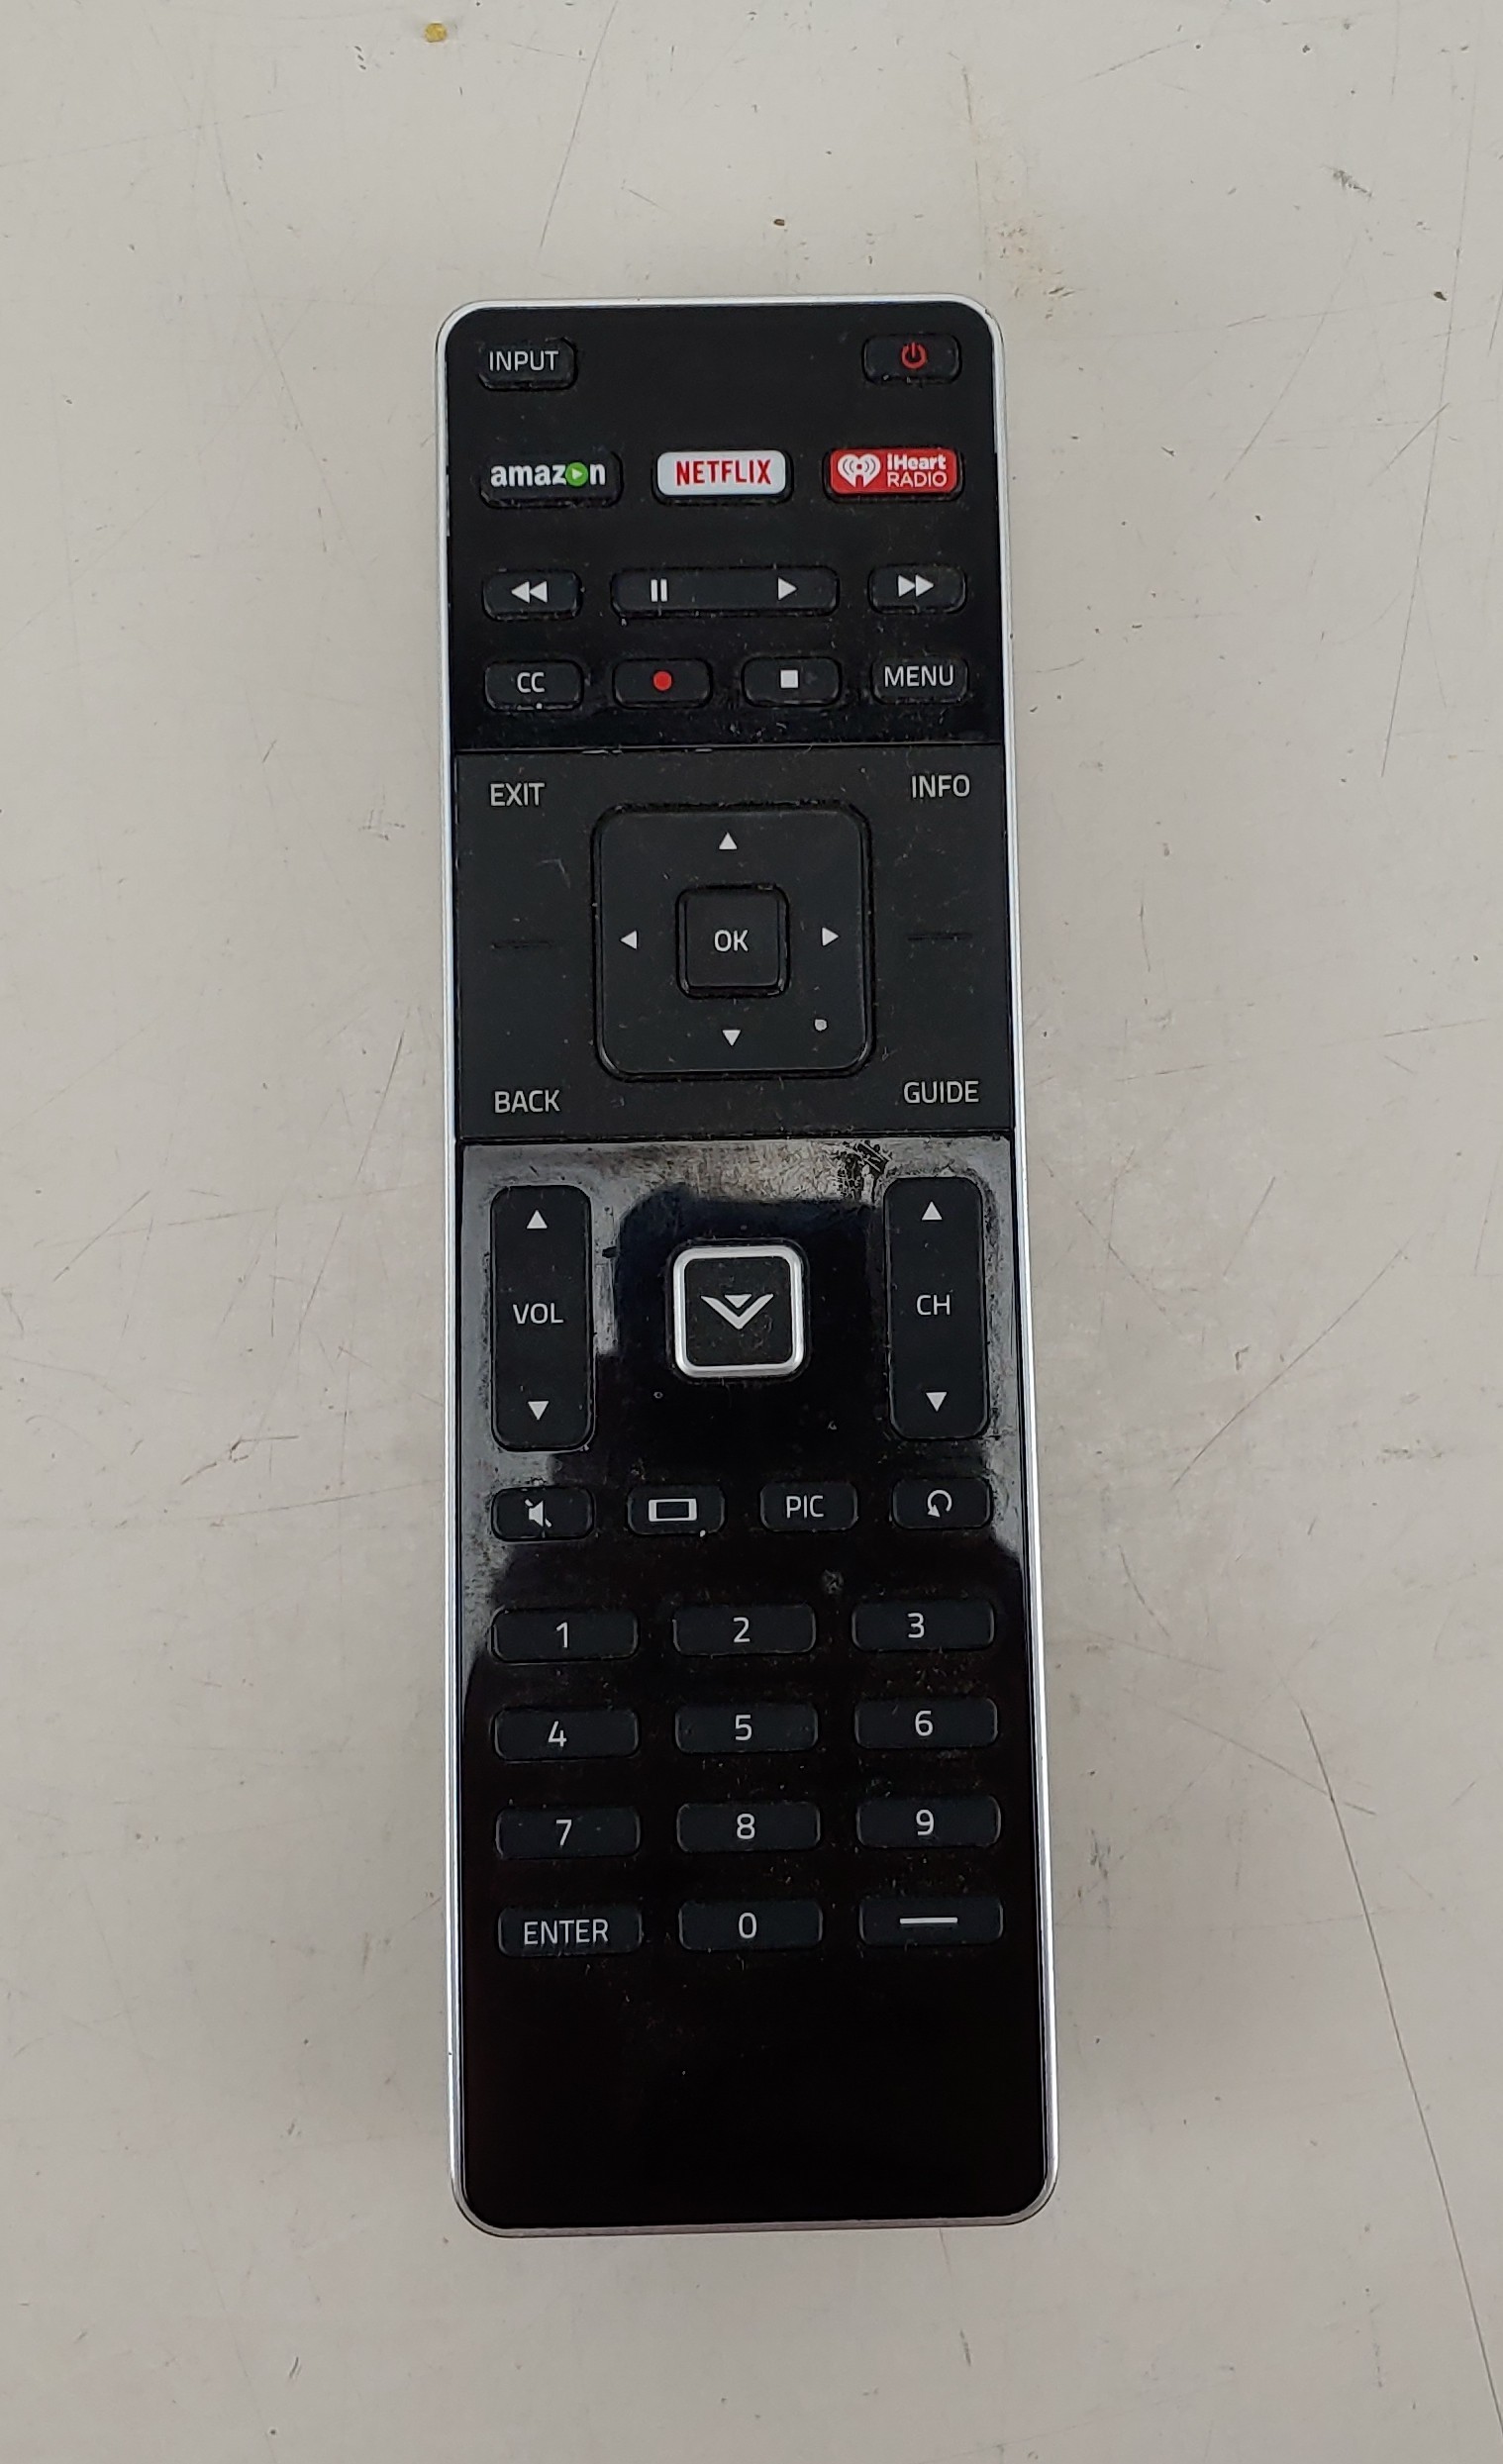 Remote Control XRT500 for Vizio Smart TV